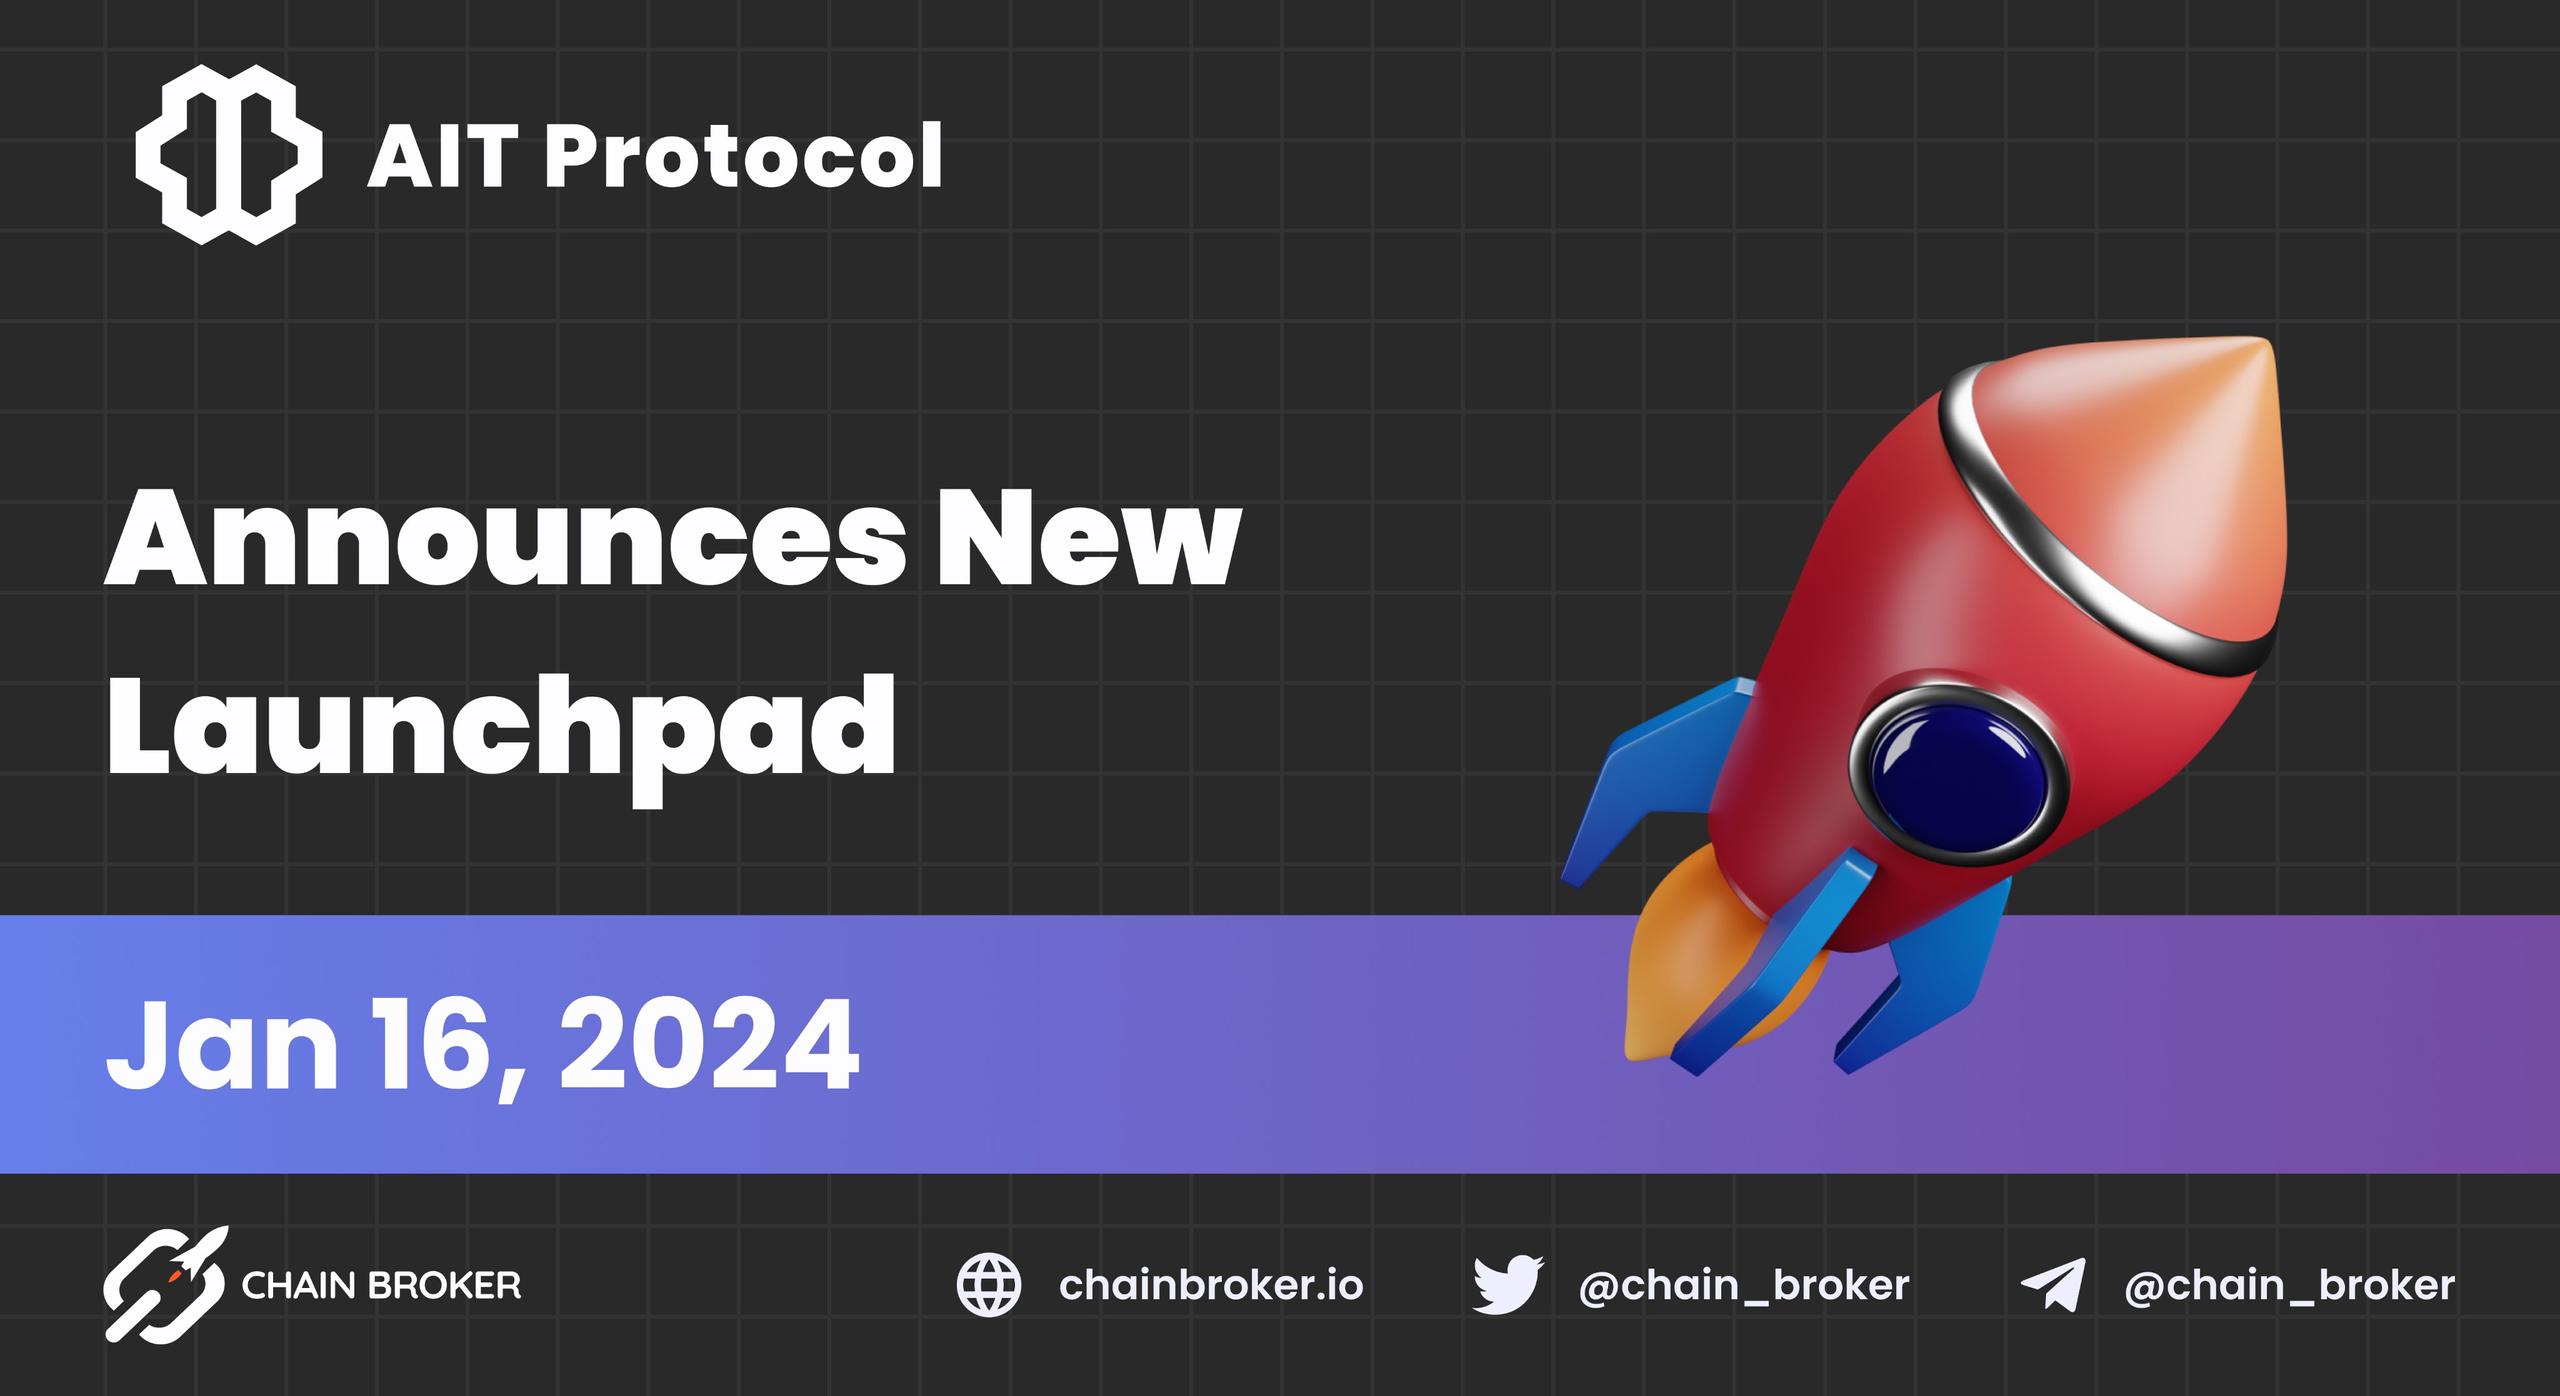 AIT Protocol Announces Launchpad